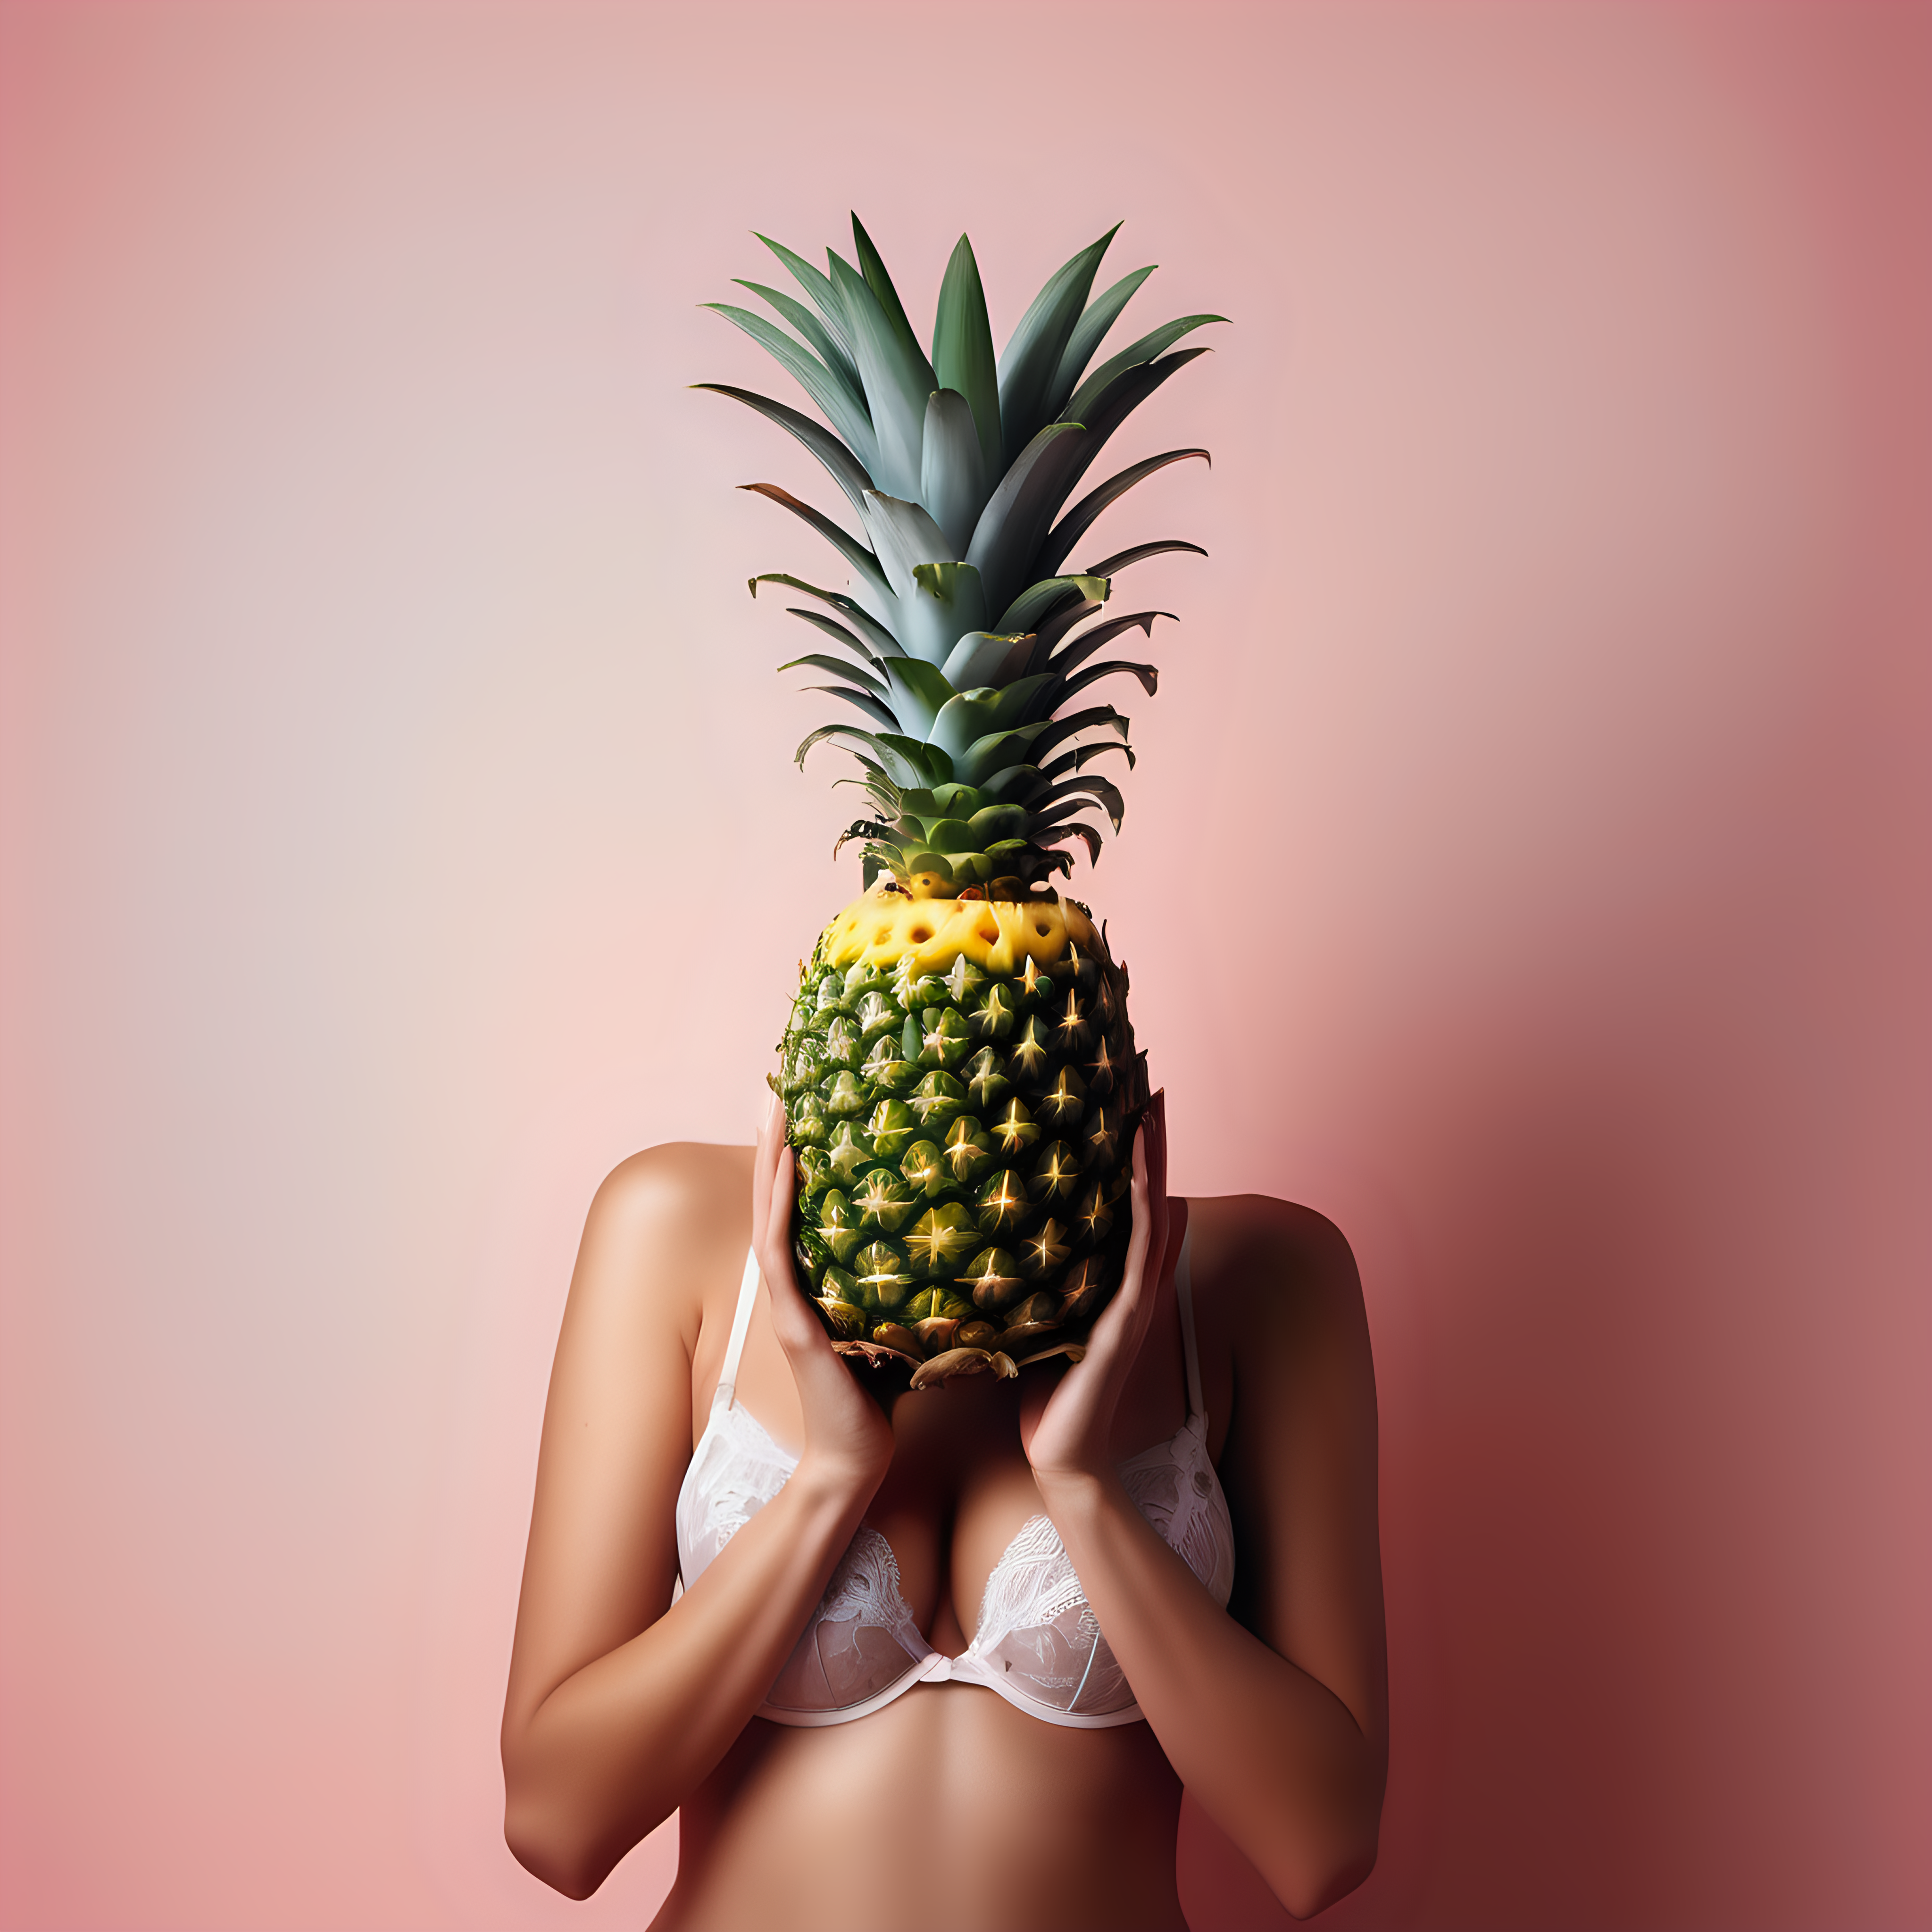 erstelle ein abstraktes foto einer ananas welche von einer frau in dessoues gehalten wird